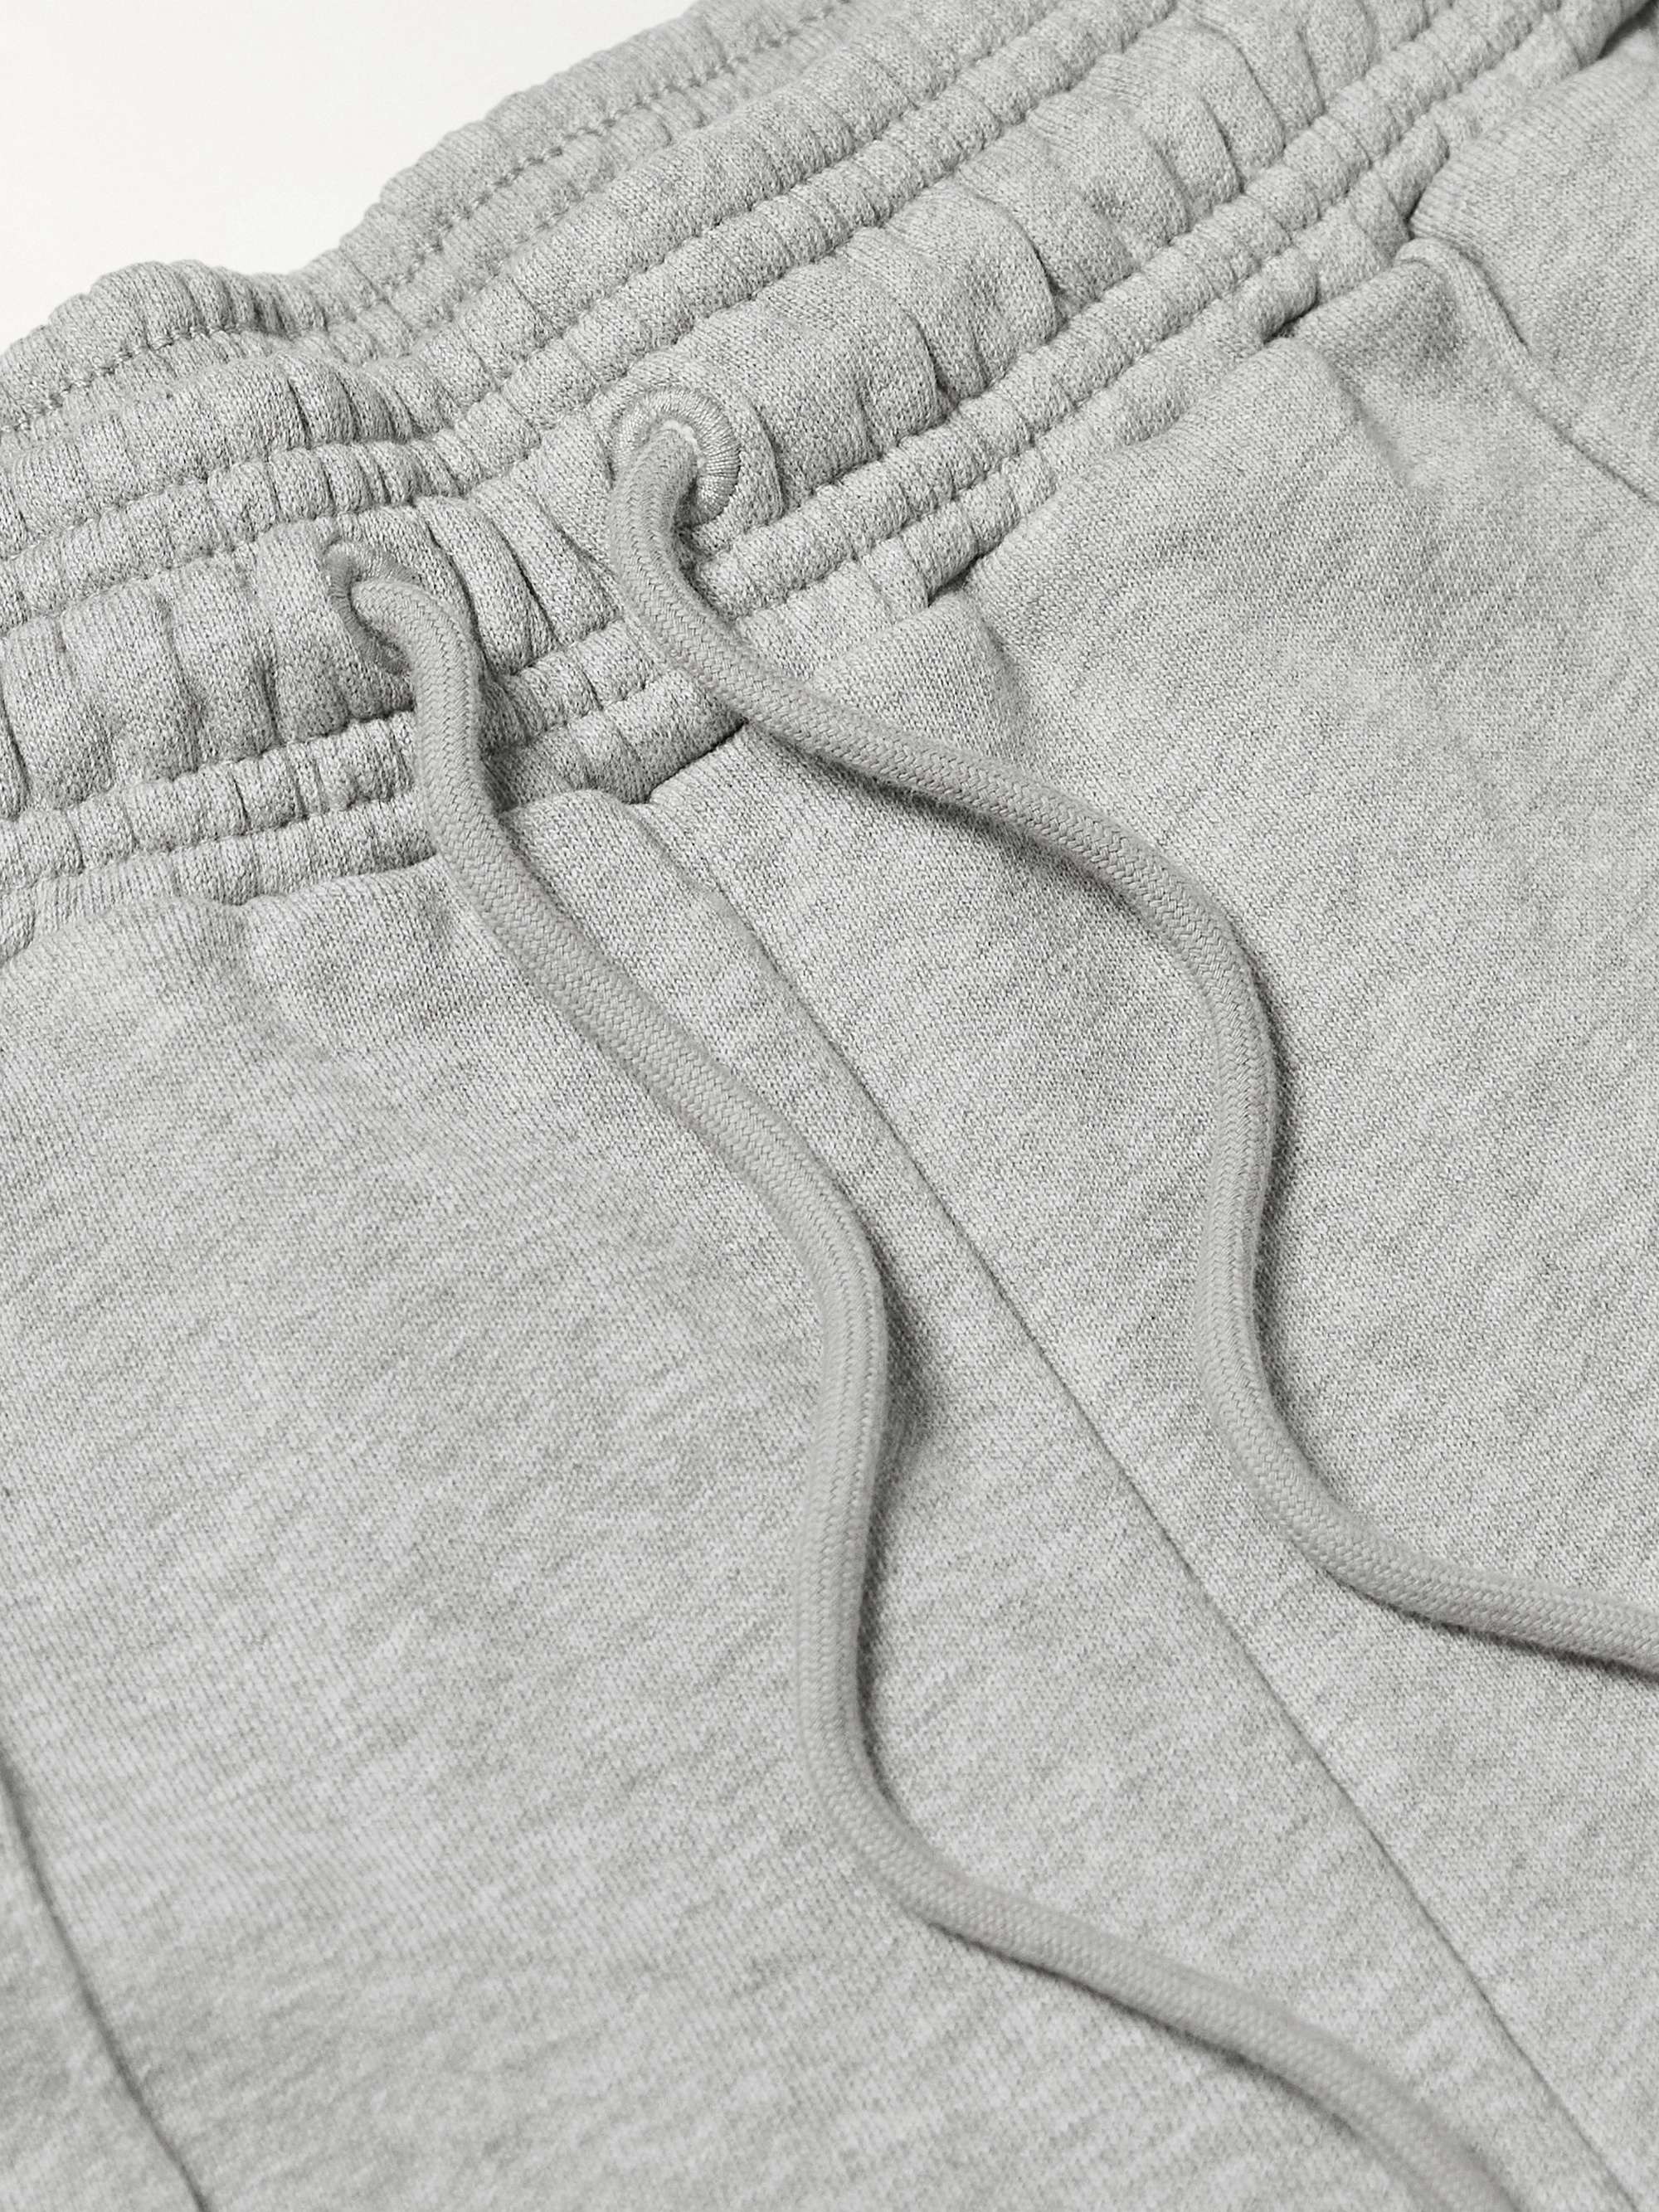 NINETY PERCENT Tapered Organic Cotton-Jersey Drawstring Sweatpants